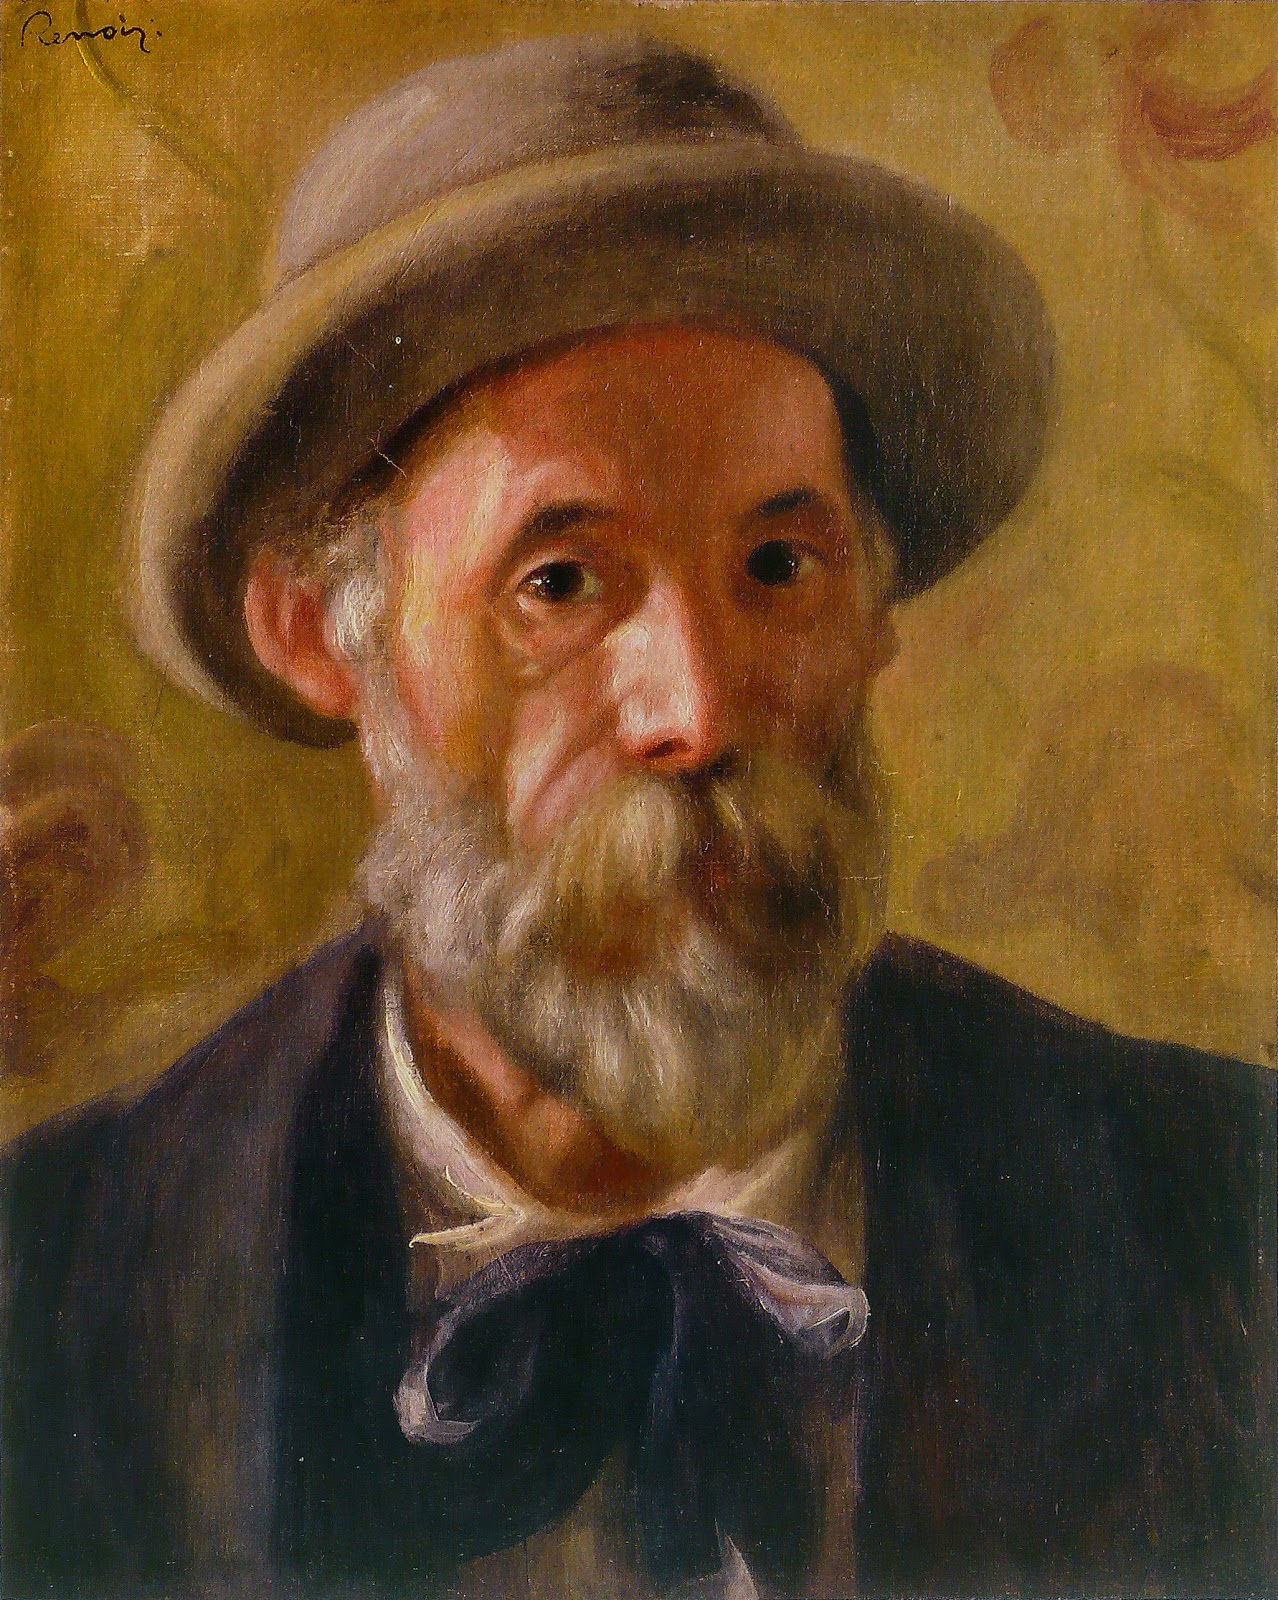 Pierre+Auguste+Renoir-1841-1-19 (867).jpg